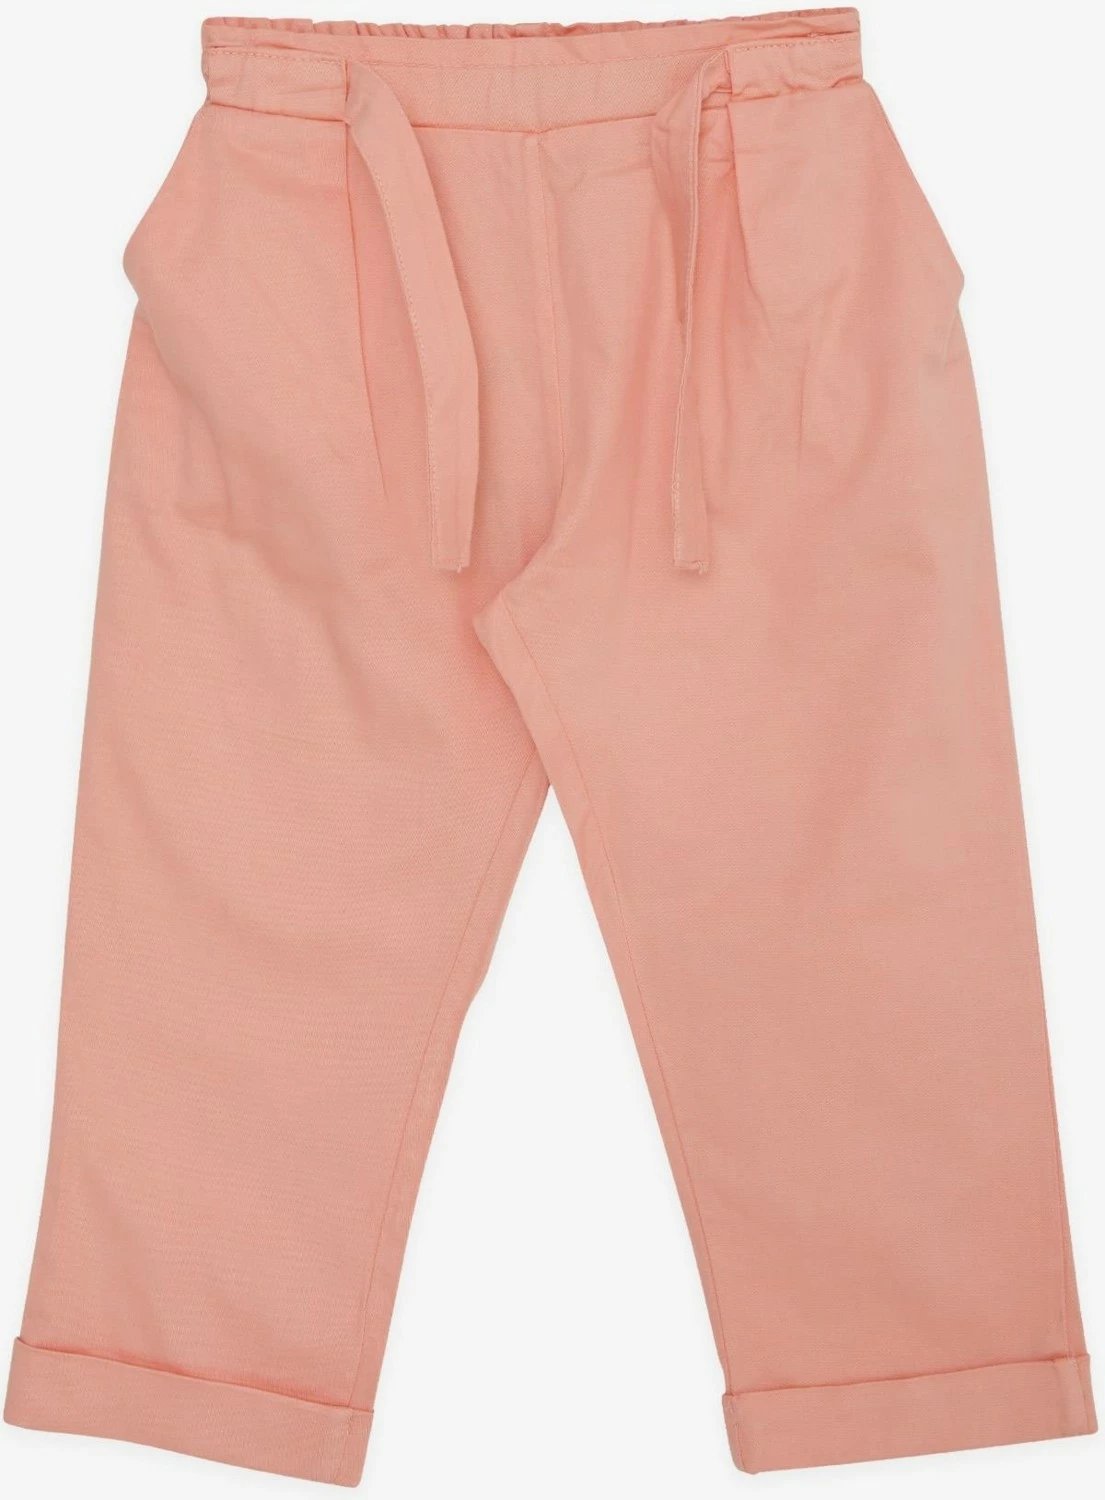 Pantallona për vajza Escabel, me bel elastik dhe xhepa, ngjyrë pistacho